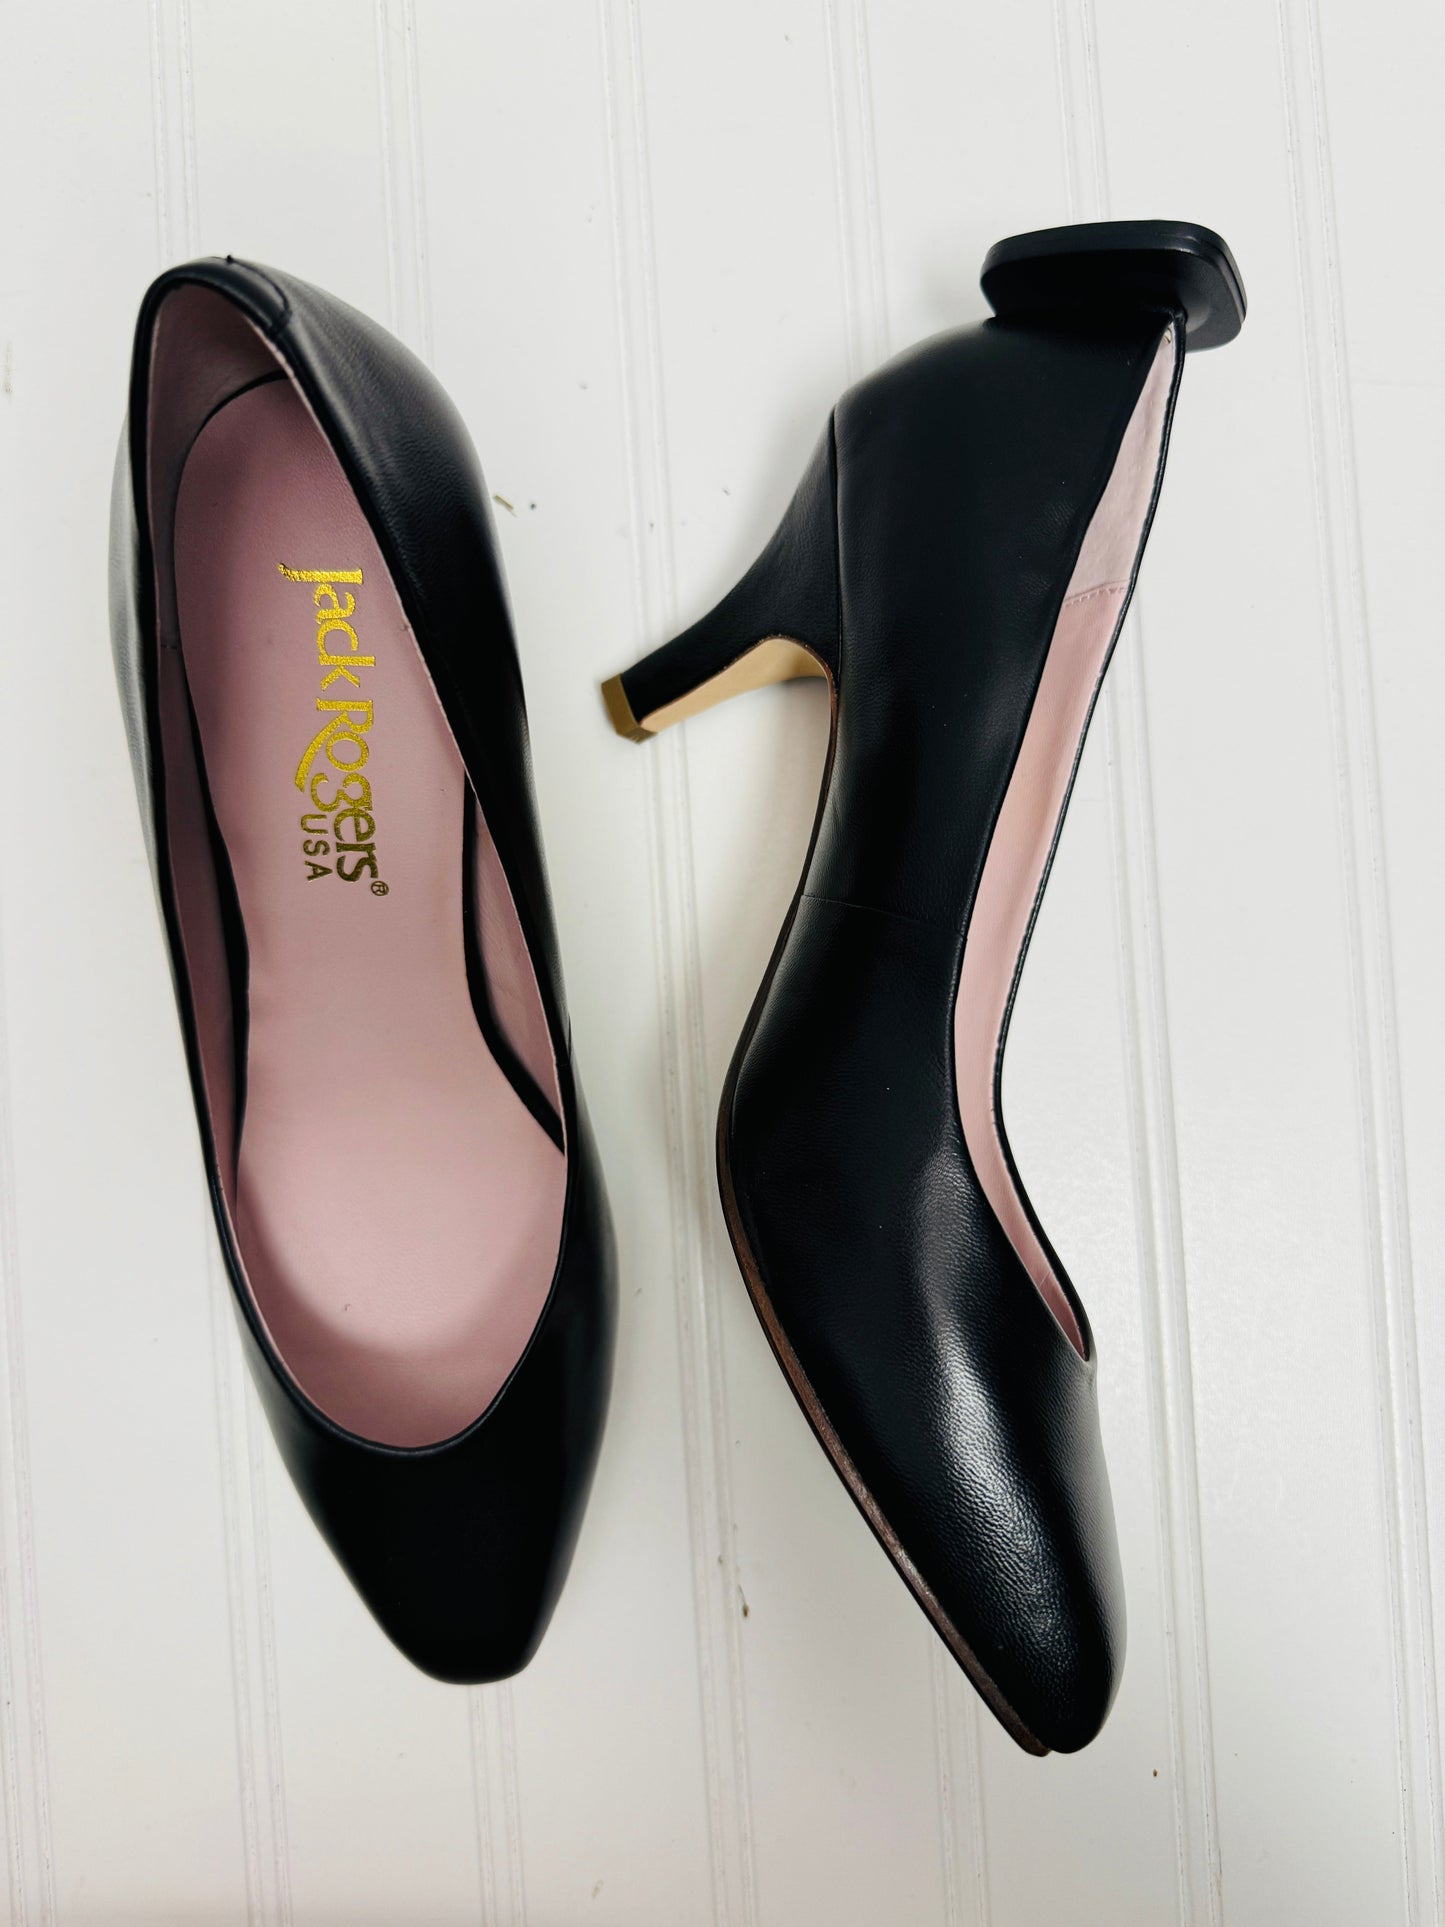 Black Shoes Heels Kitten Jack Rogers, Size 8.5